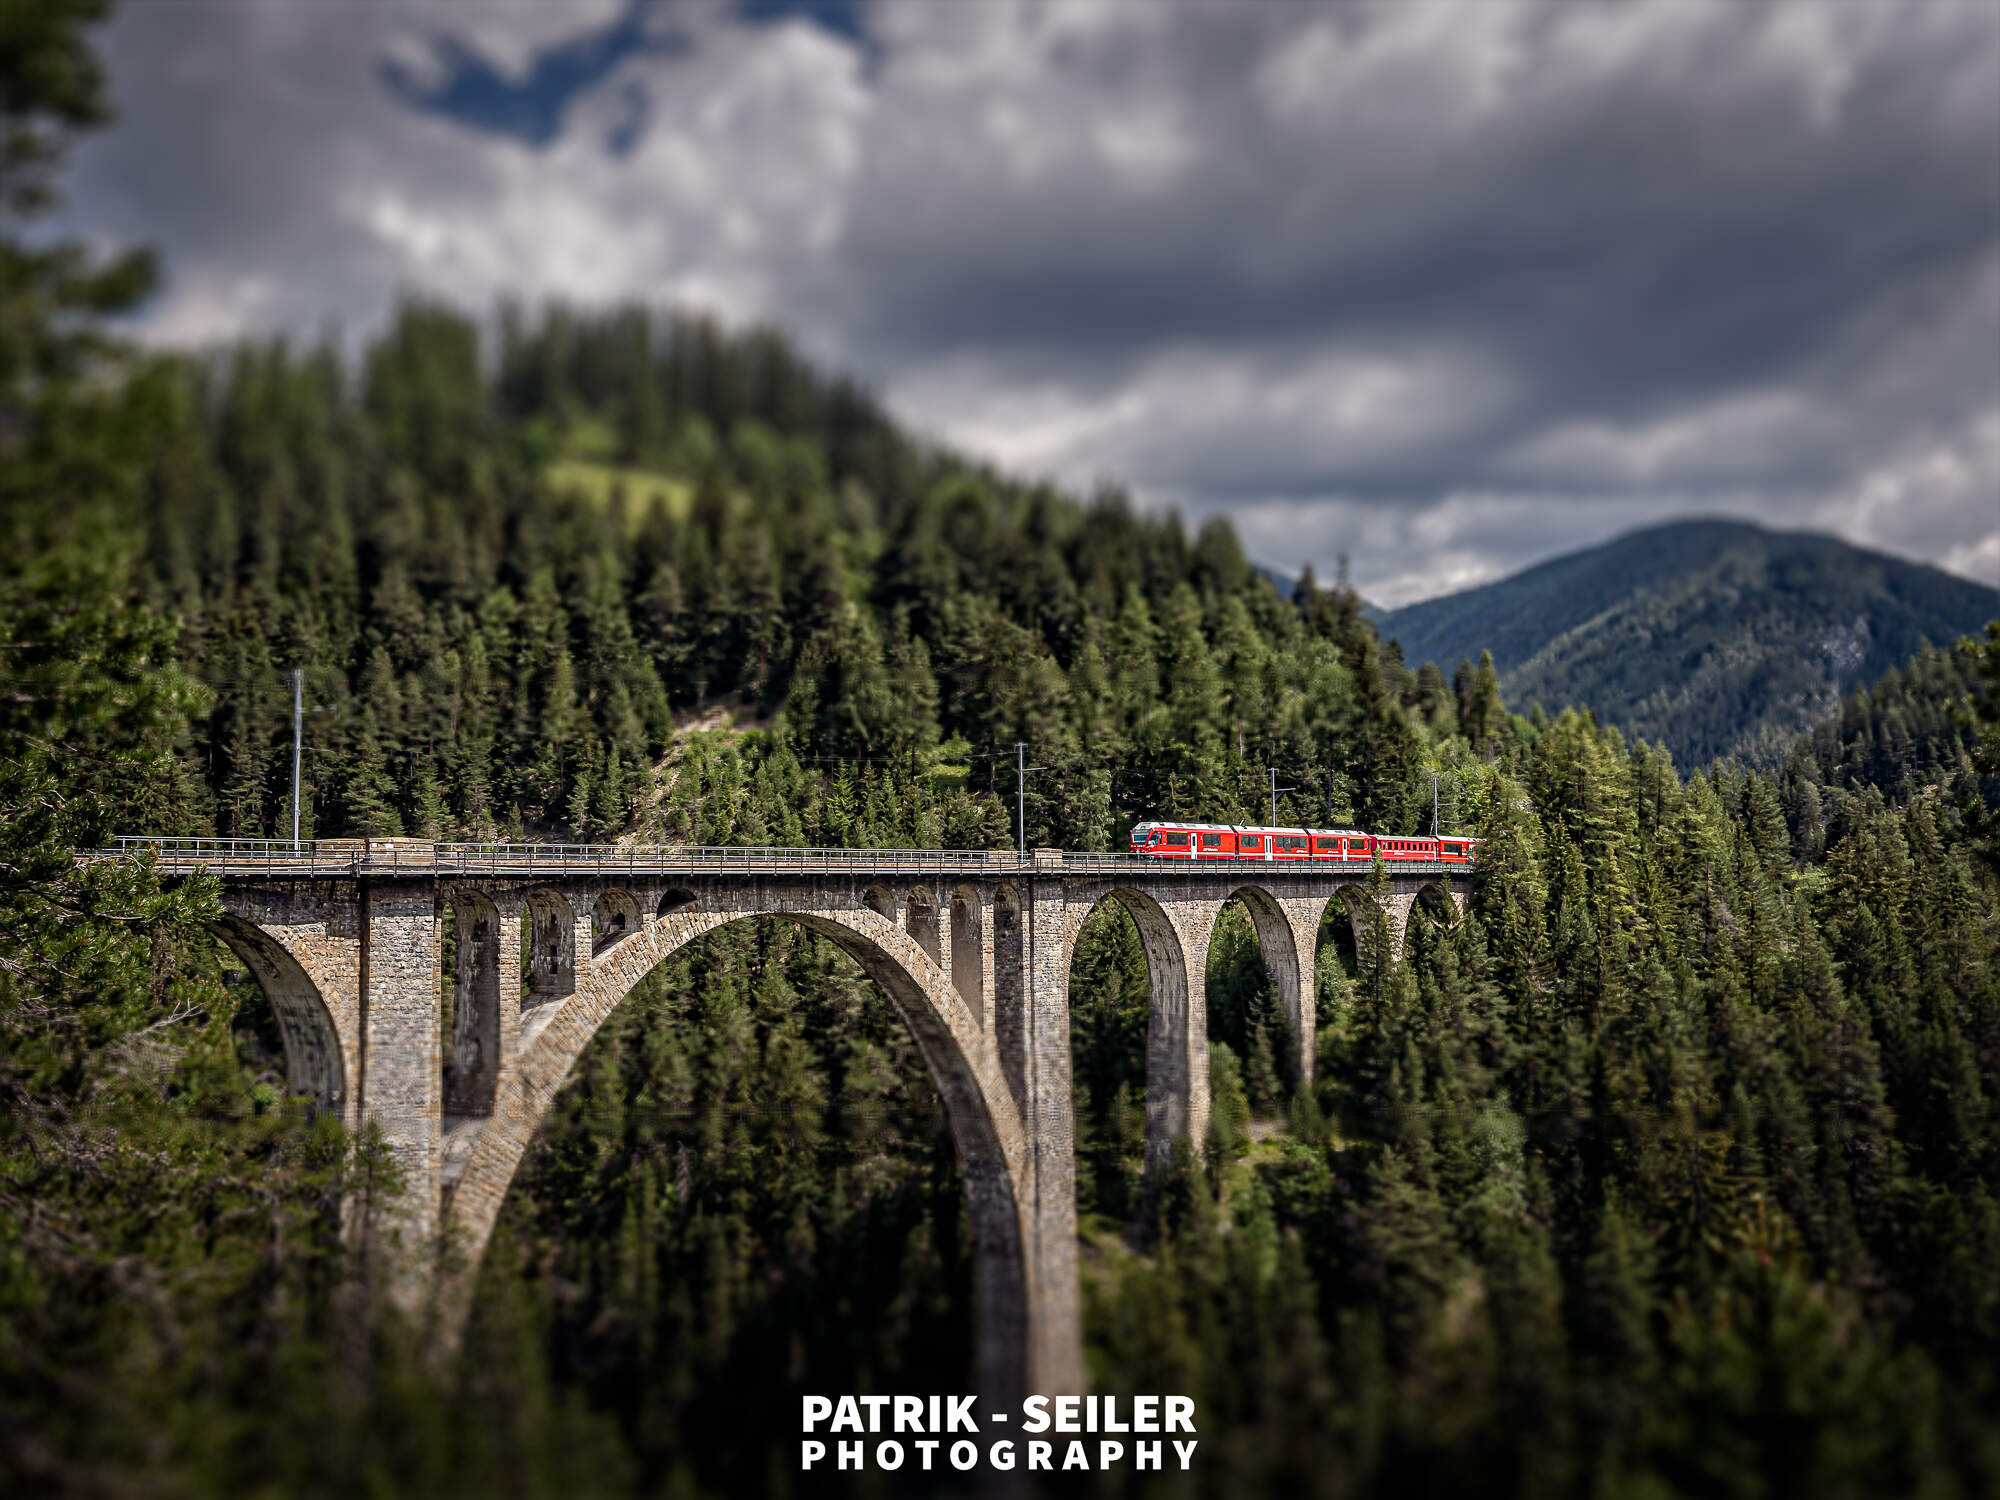 Wiesen Viaduct, Rhaetian Railway (Rhätische Bahn) - Switzerland